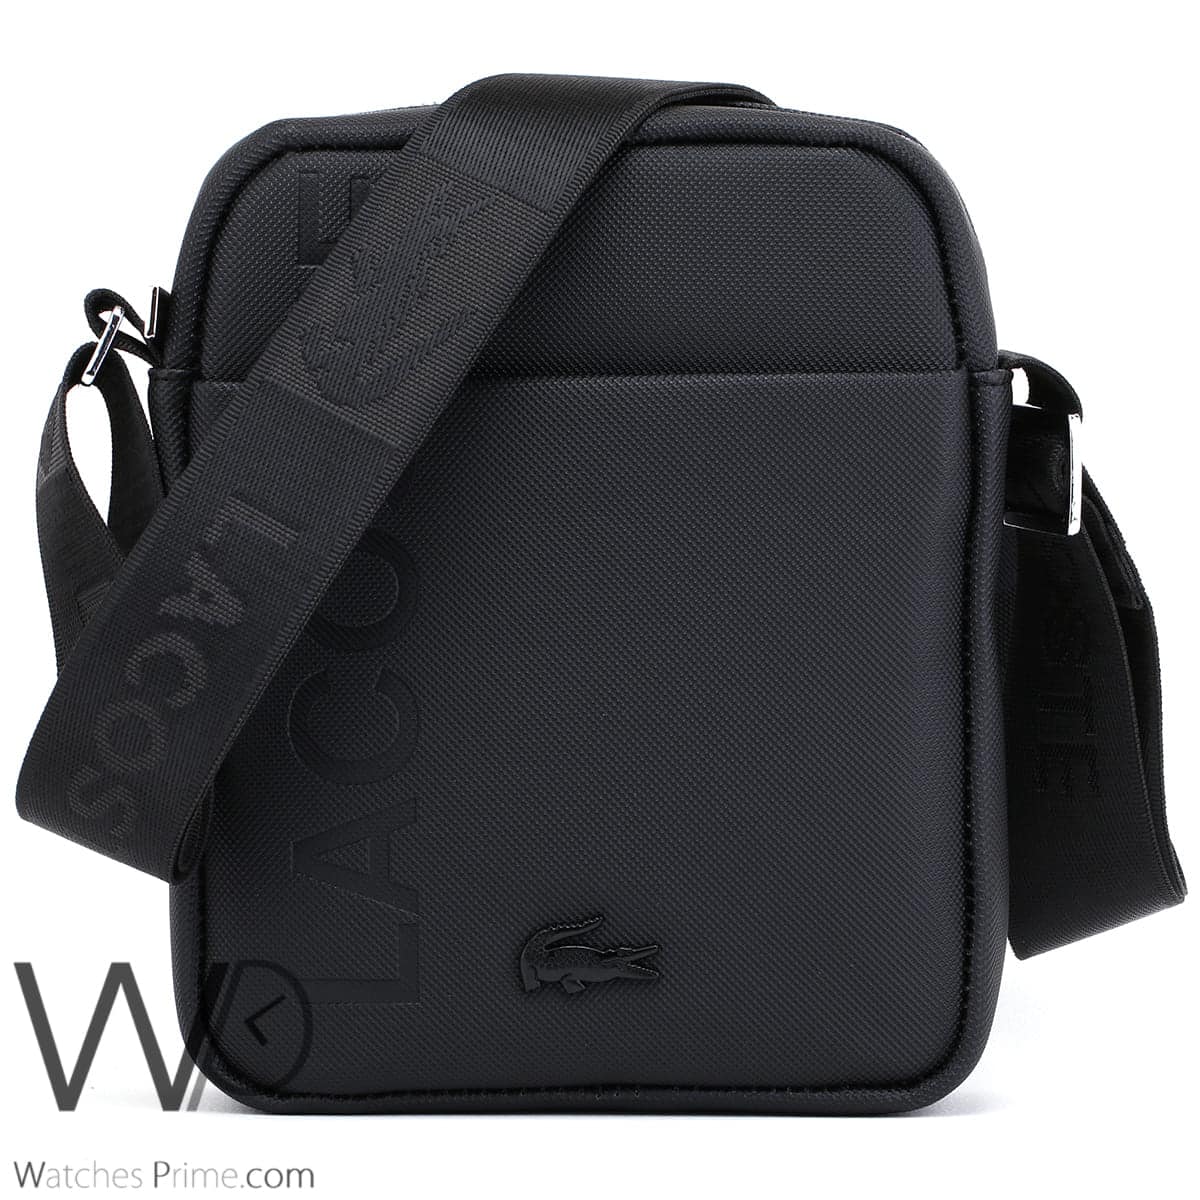 Lacoste leather black Messenger Bag